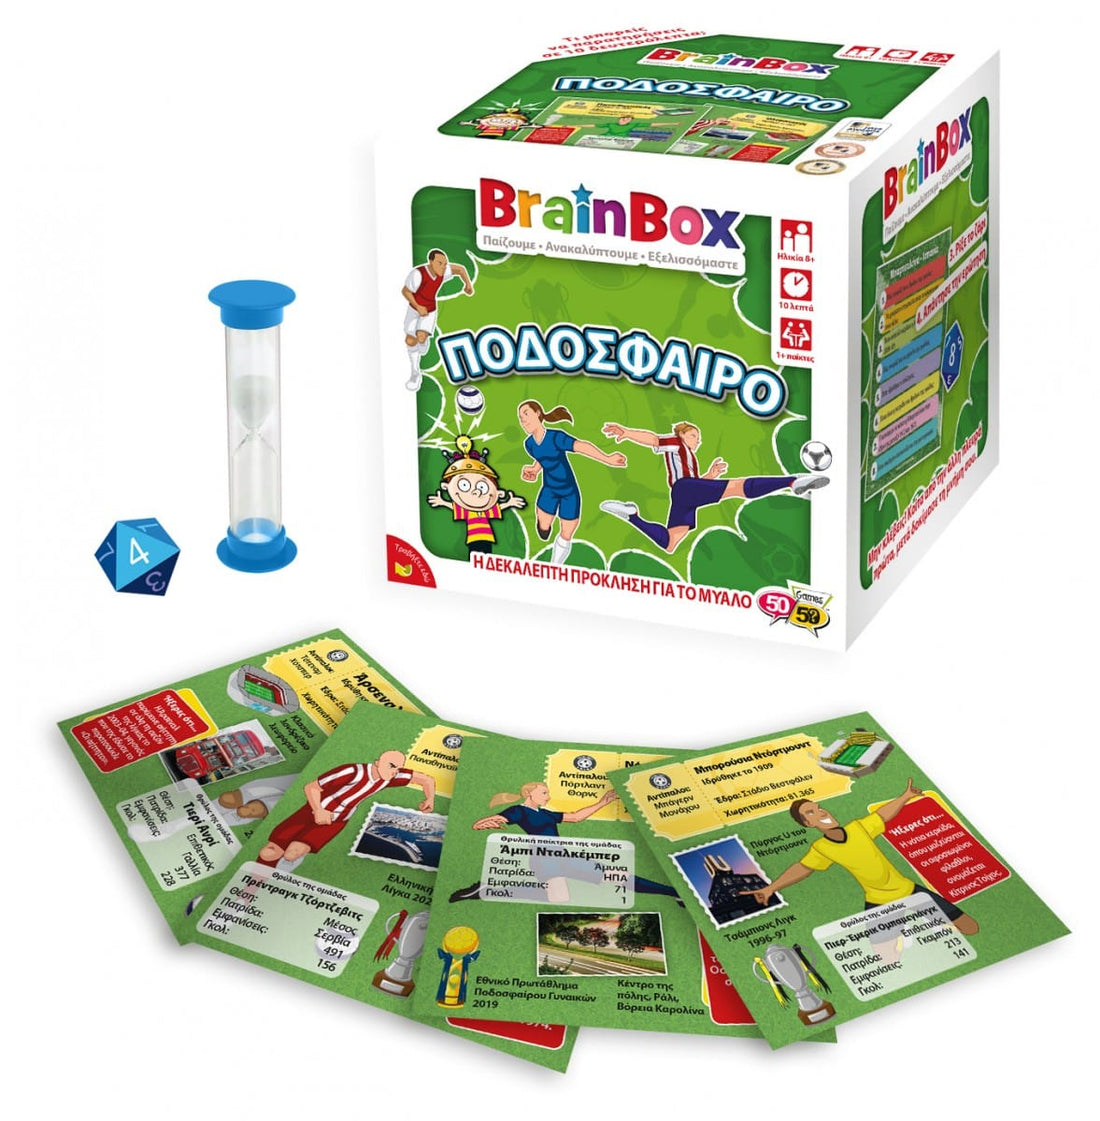 Brainbox Ποδοσφαιρο Επιτραπεζιο Παιχνιδι